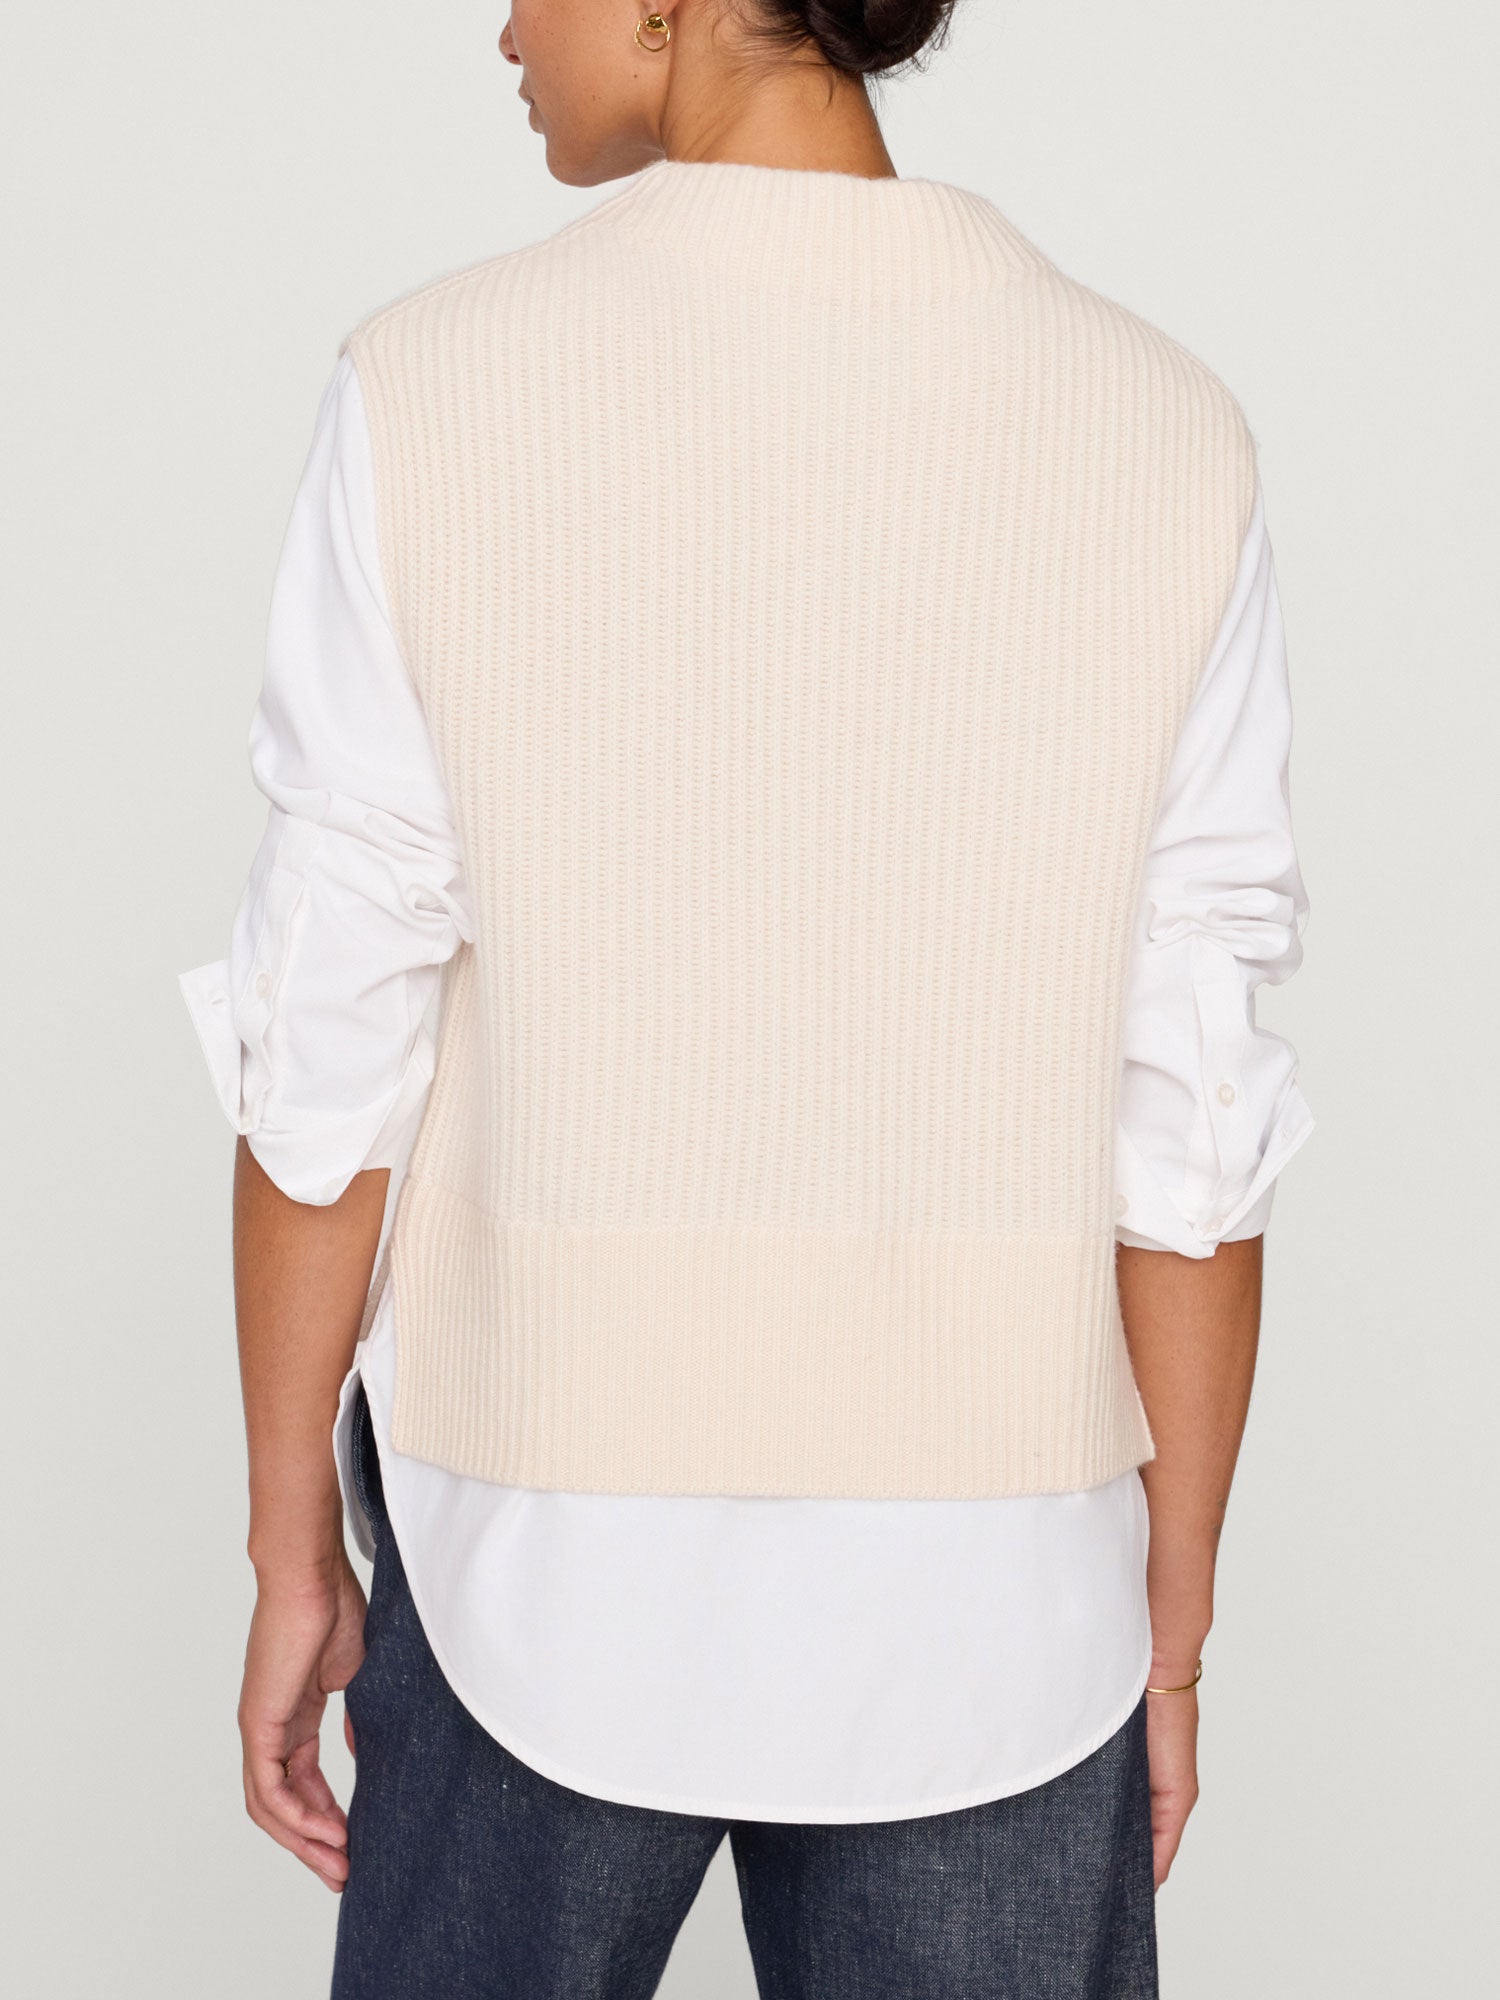 Joni Funnel neck vest overlayer beige back view